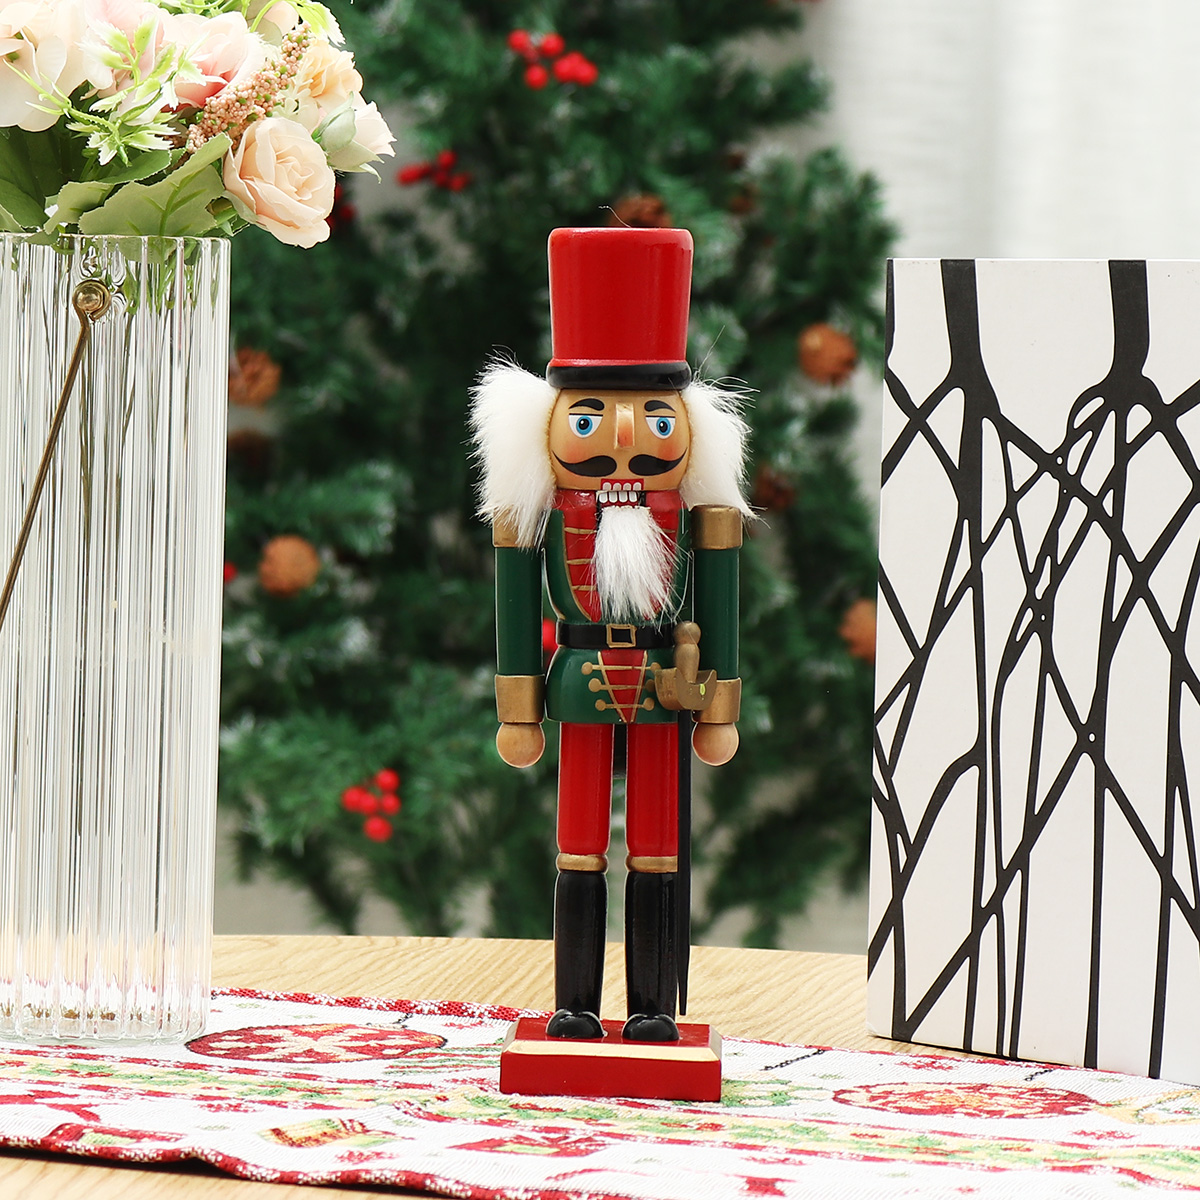 Christmas-Nutcracker-Soldier-Doll--Wooden-Puppet-Vintage-Desktop-Ornaments-25cm-Festival-Decoration-1767883-5